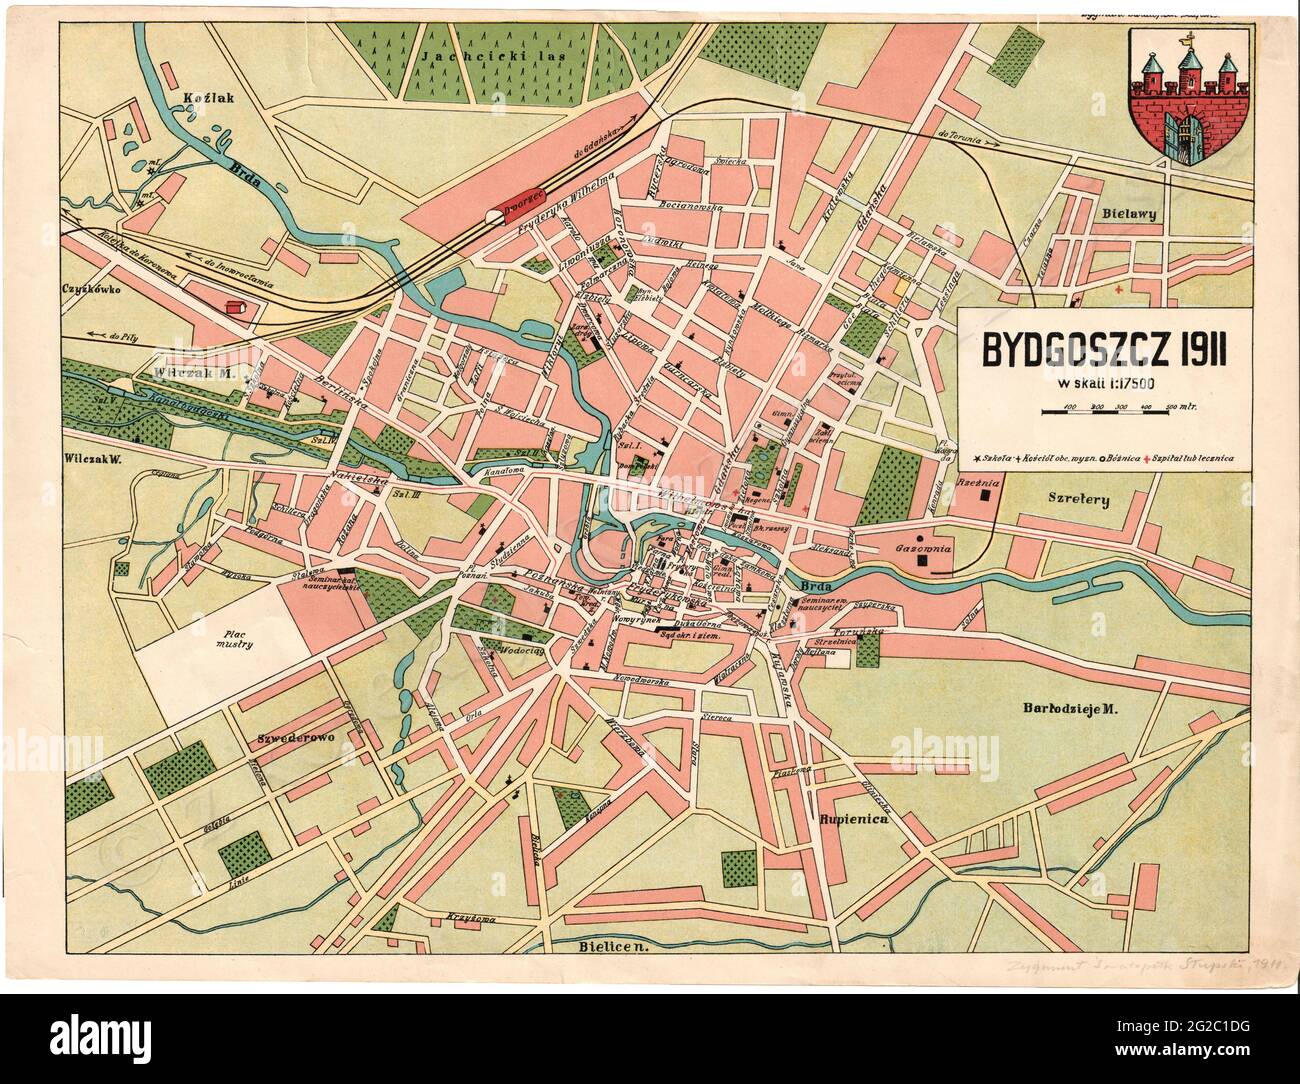 Bydgoszcz map, Map of Bydgoszcz, Bydgoszcz Print, Bydgoszcz Poster, Bydgoszcz Poland, Bydgoszcz Art, Bydgoszcz Plan, Bydgoszcz City, Poland Map Stock Photo